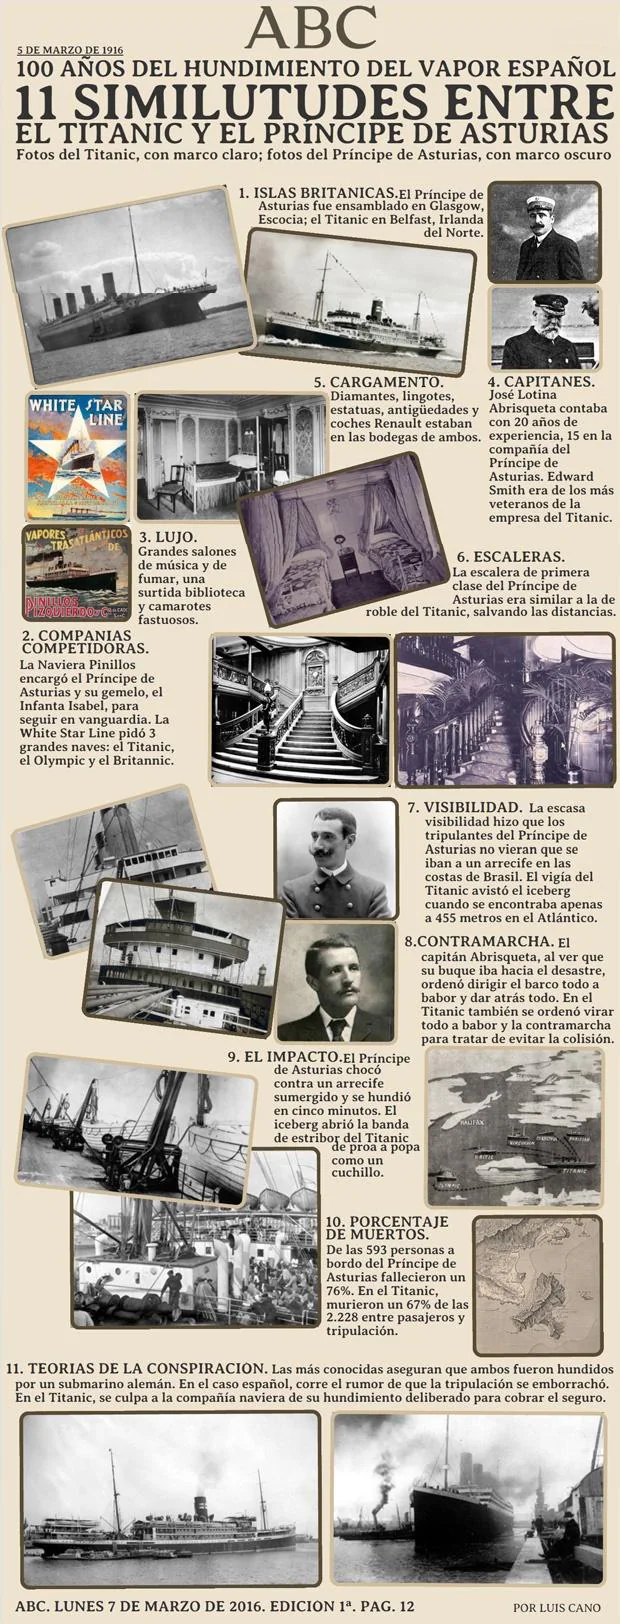 El desastre olvidado del «Titanic español»: la tragedia que estremeció a Alfonso XIII